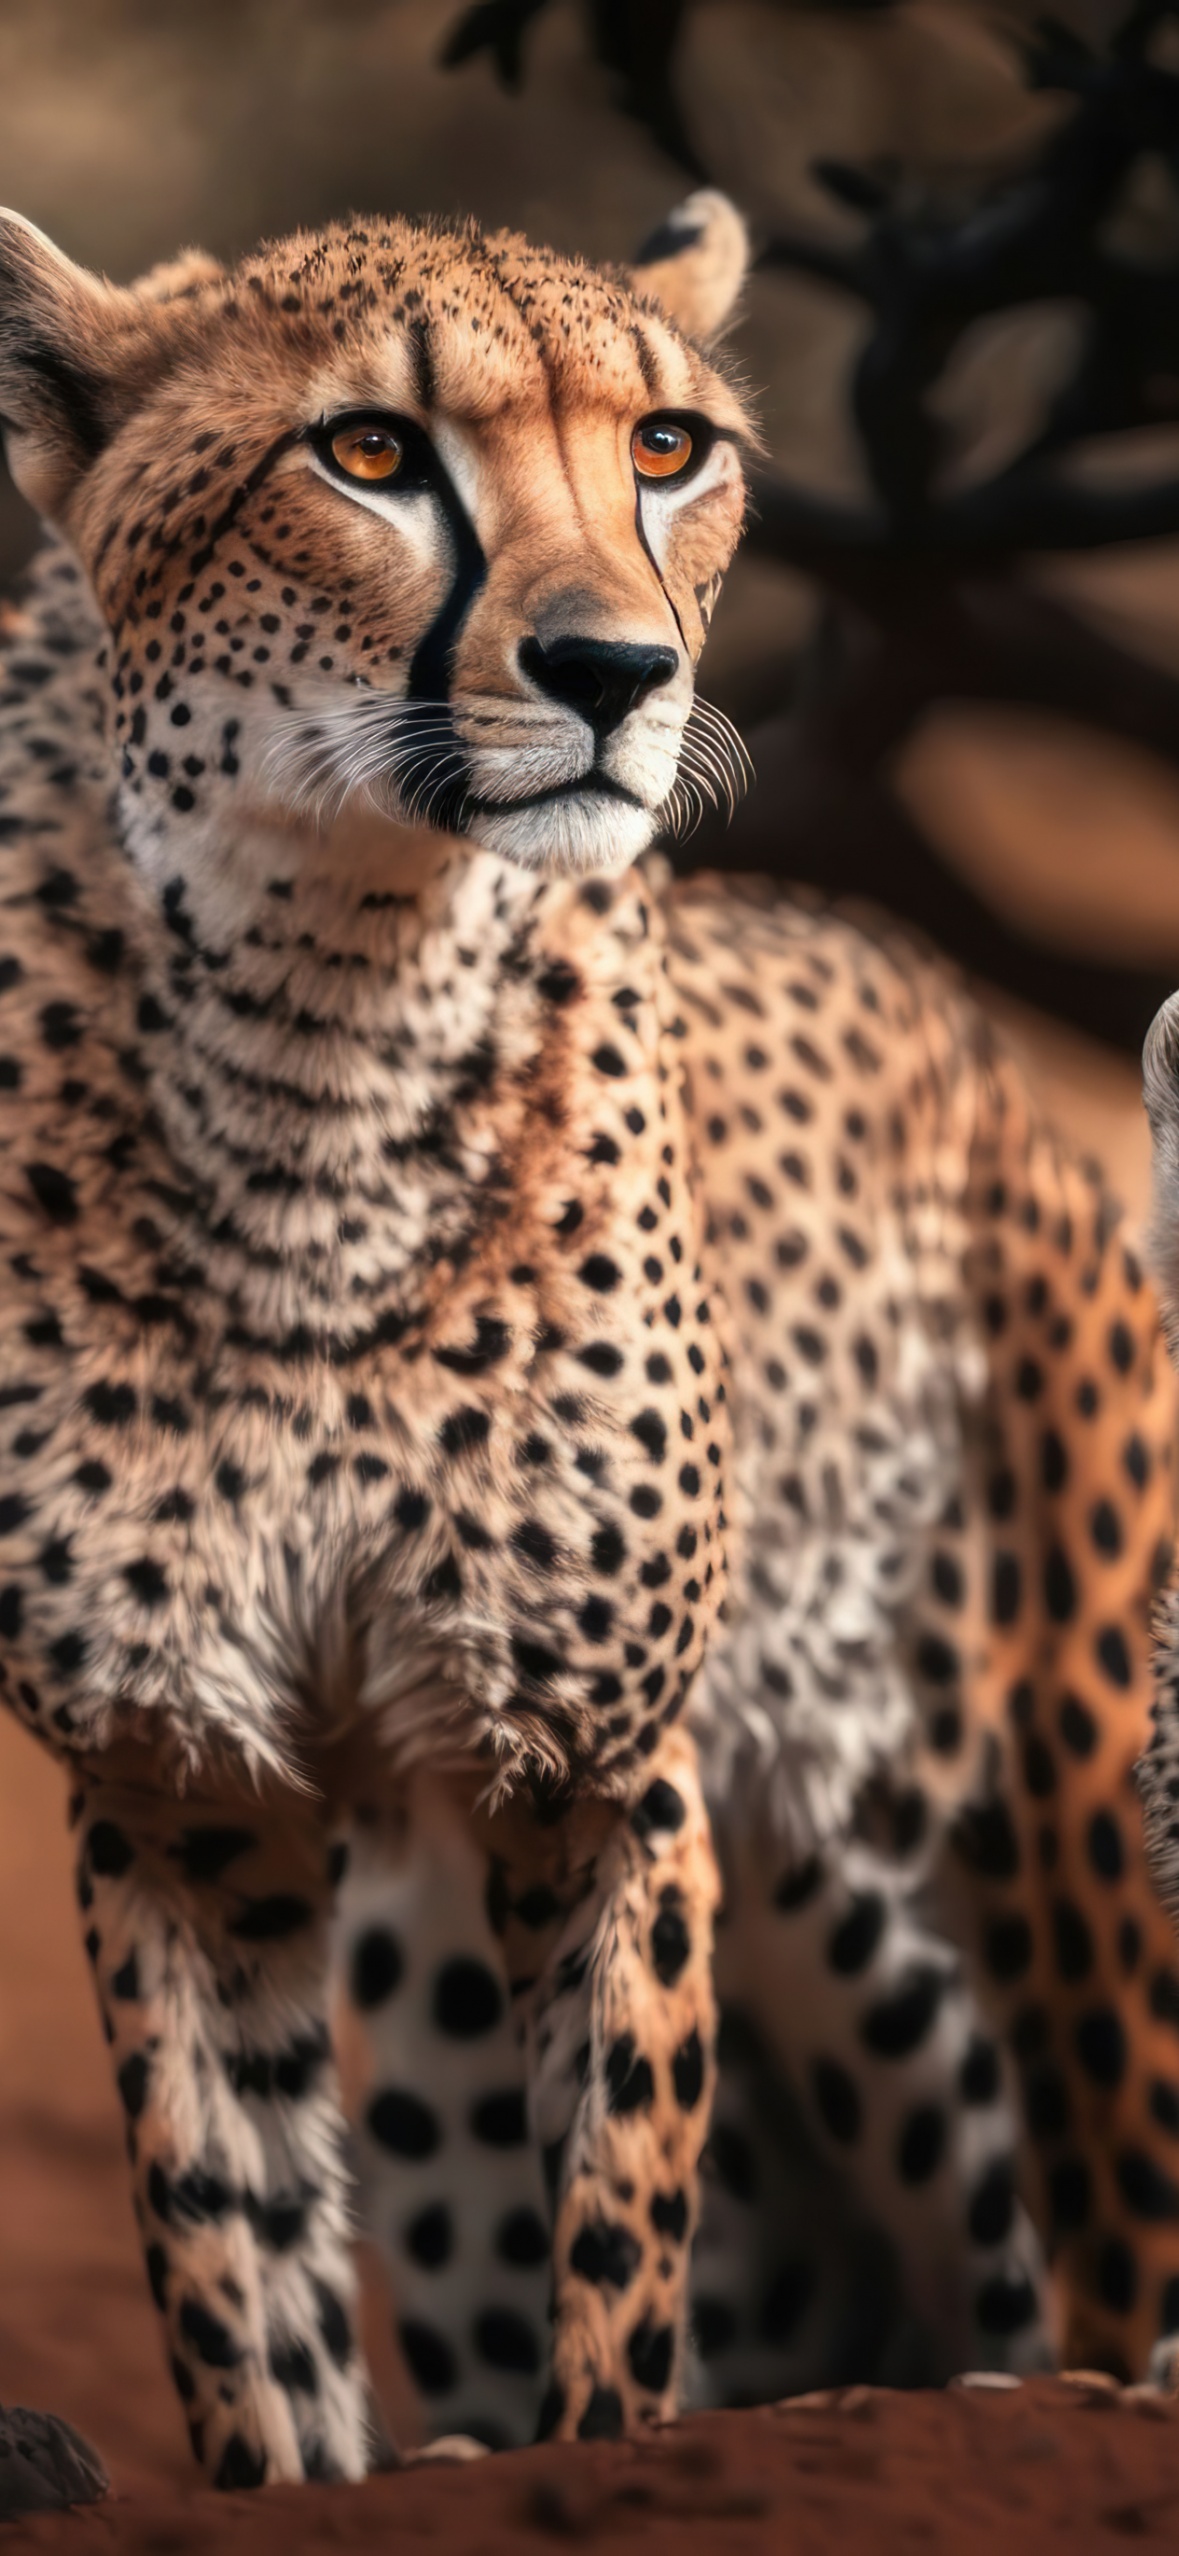 HD cheetah wallpapers